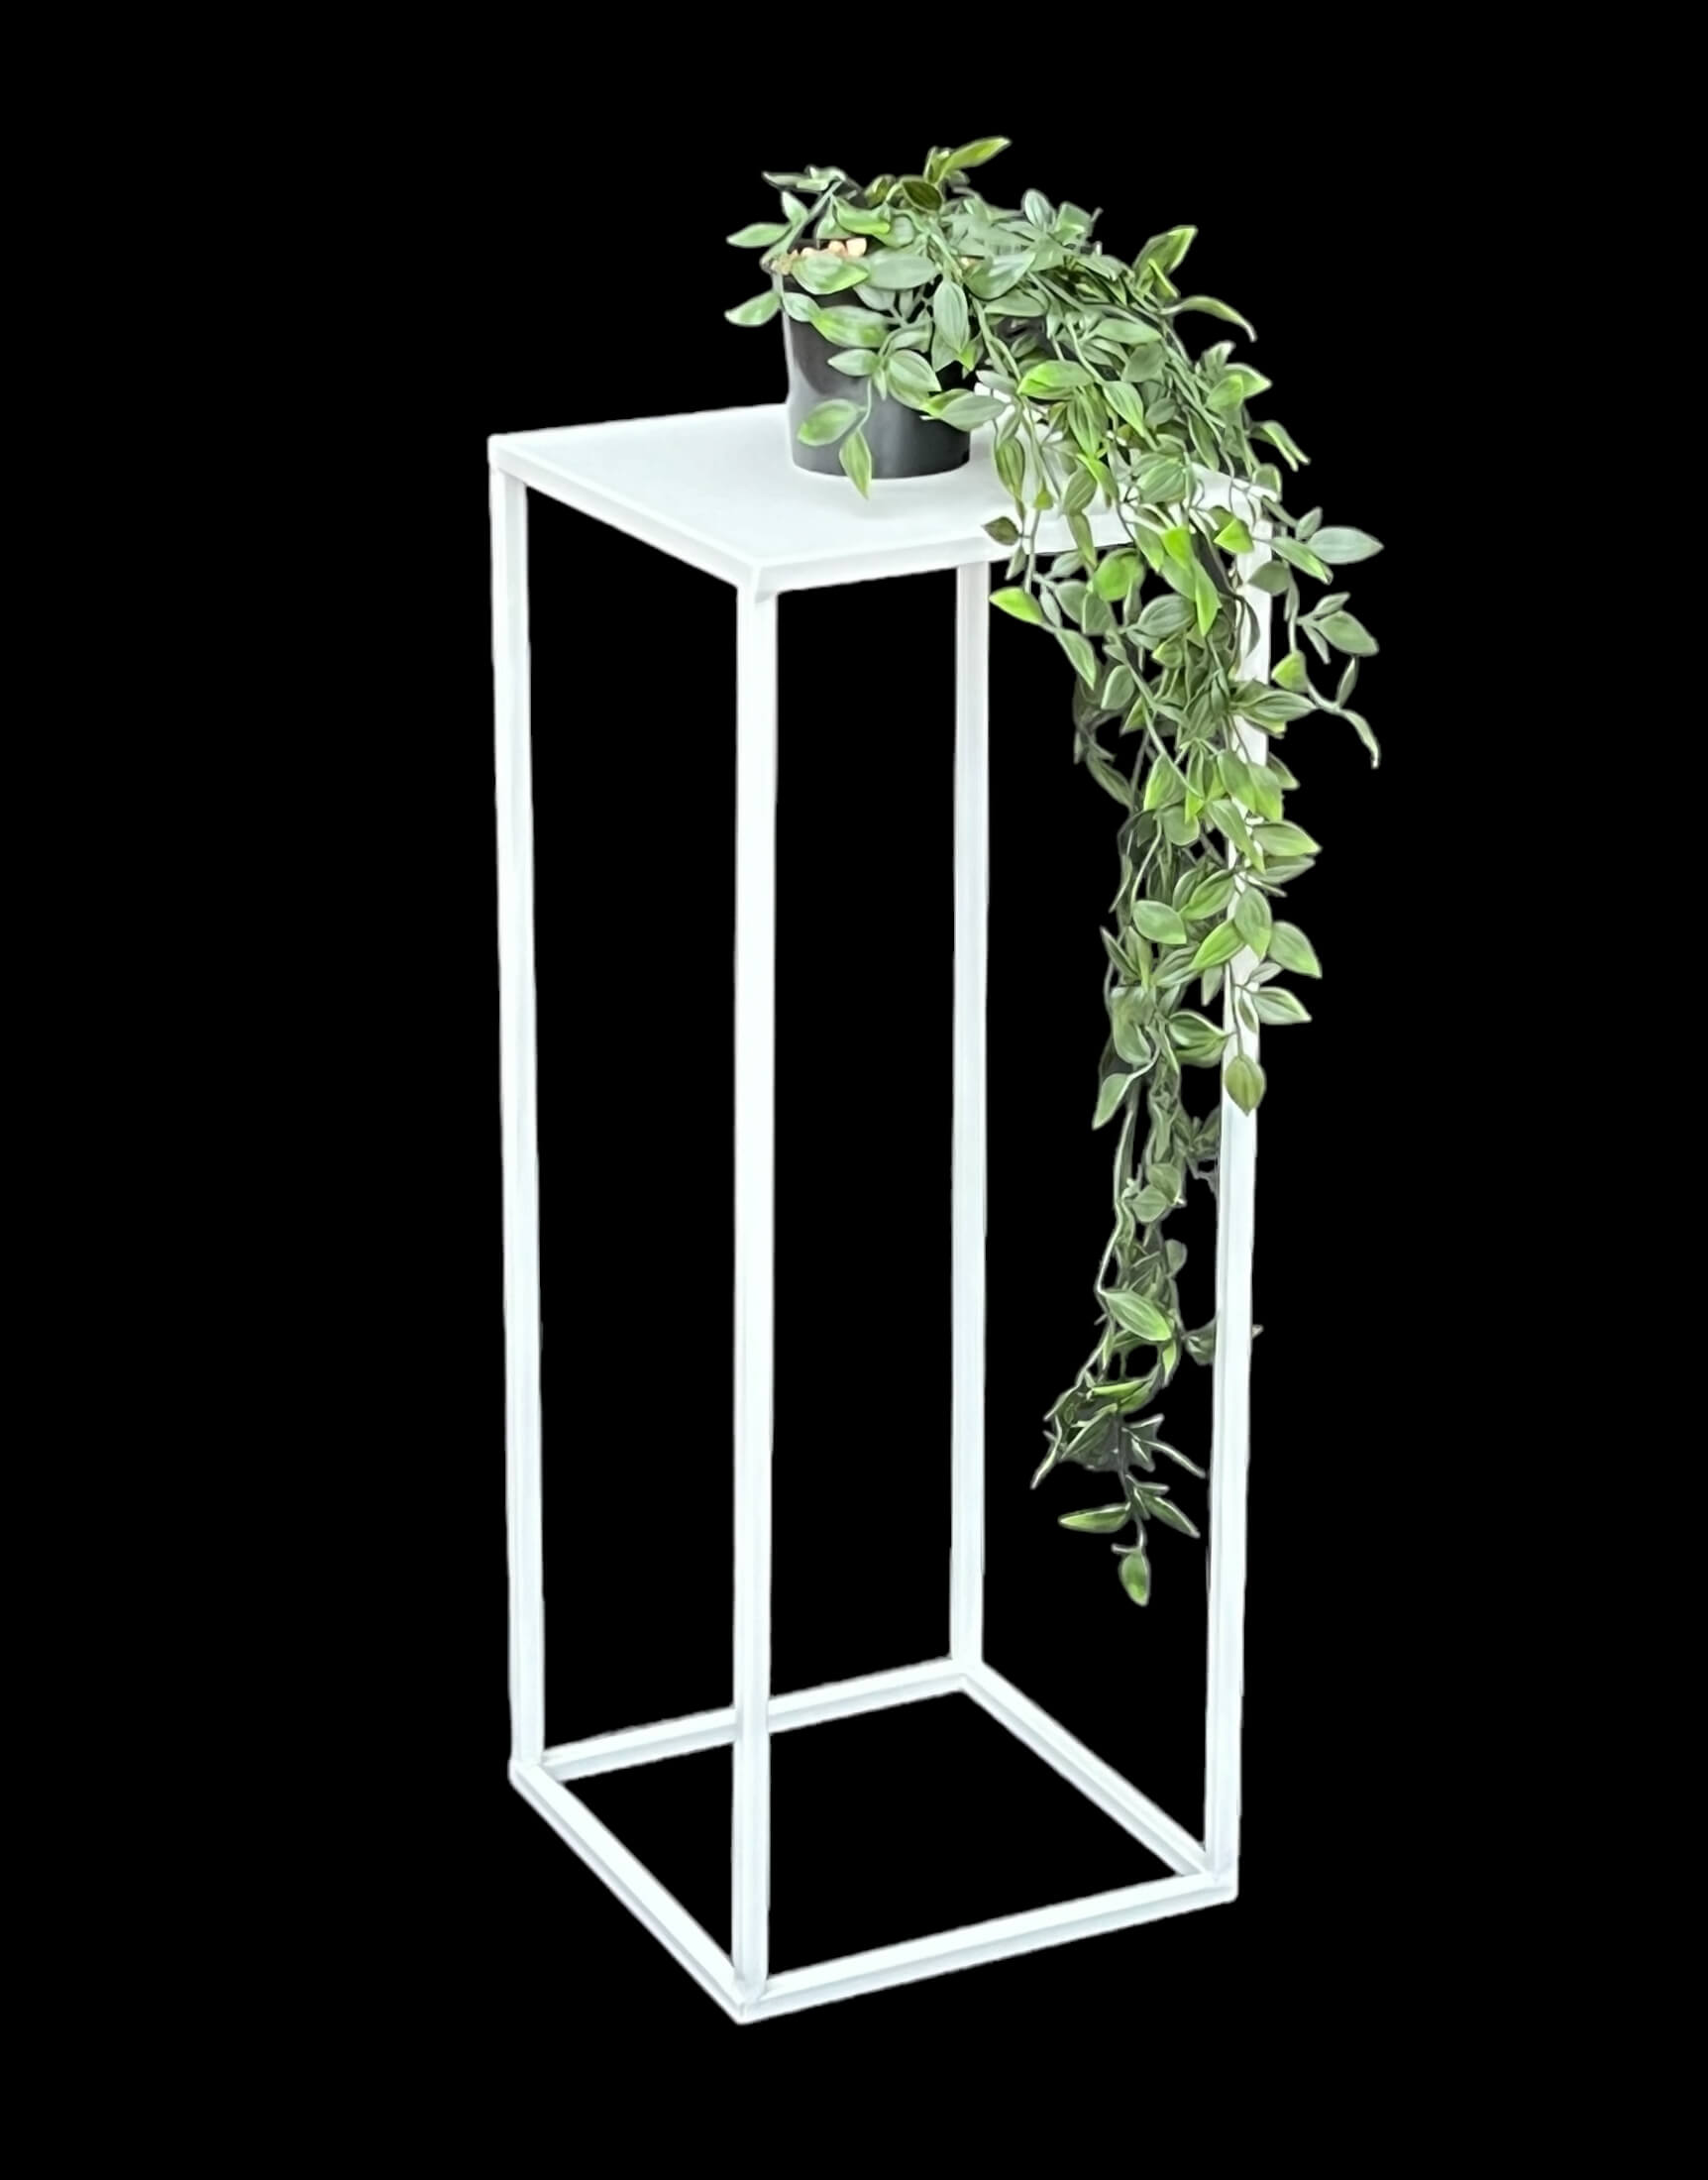 DanDiBo Blumenhocker Metall Weiß Eckig DanDiBo-Ambiente Blumenständer 60 cm Beistelltisch Pflanzenhocker Pflanzenständer 96482 - Blumensäule M Modern